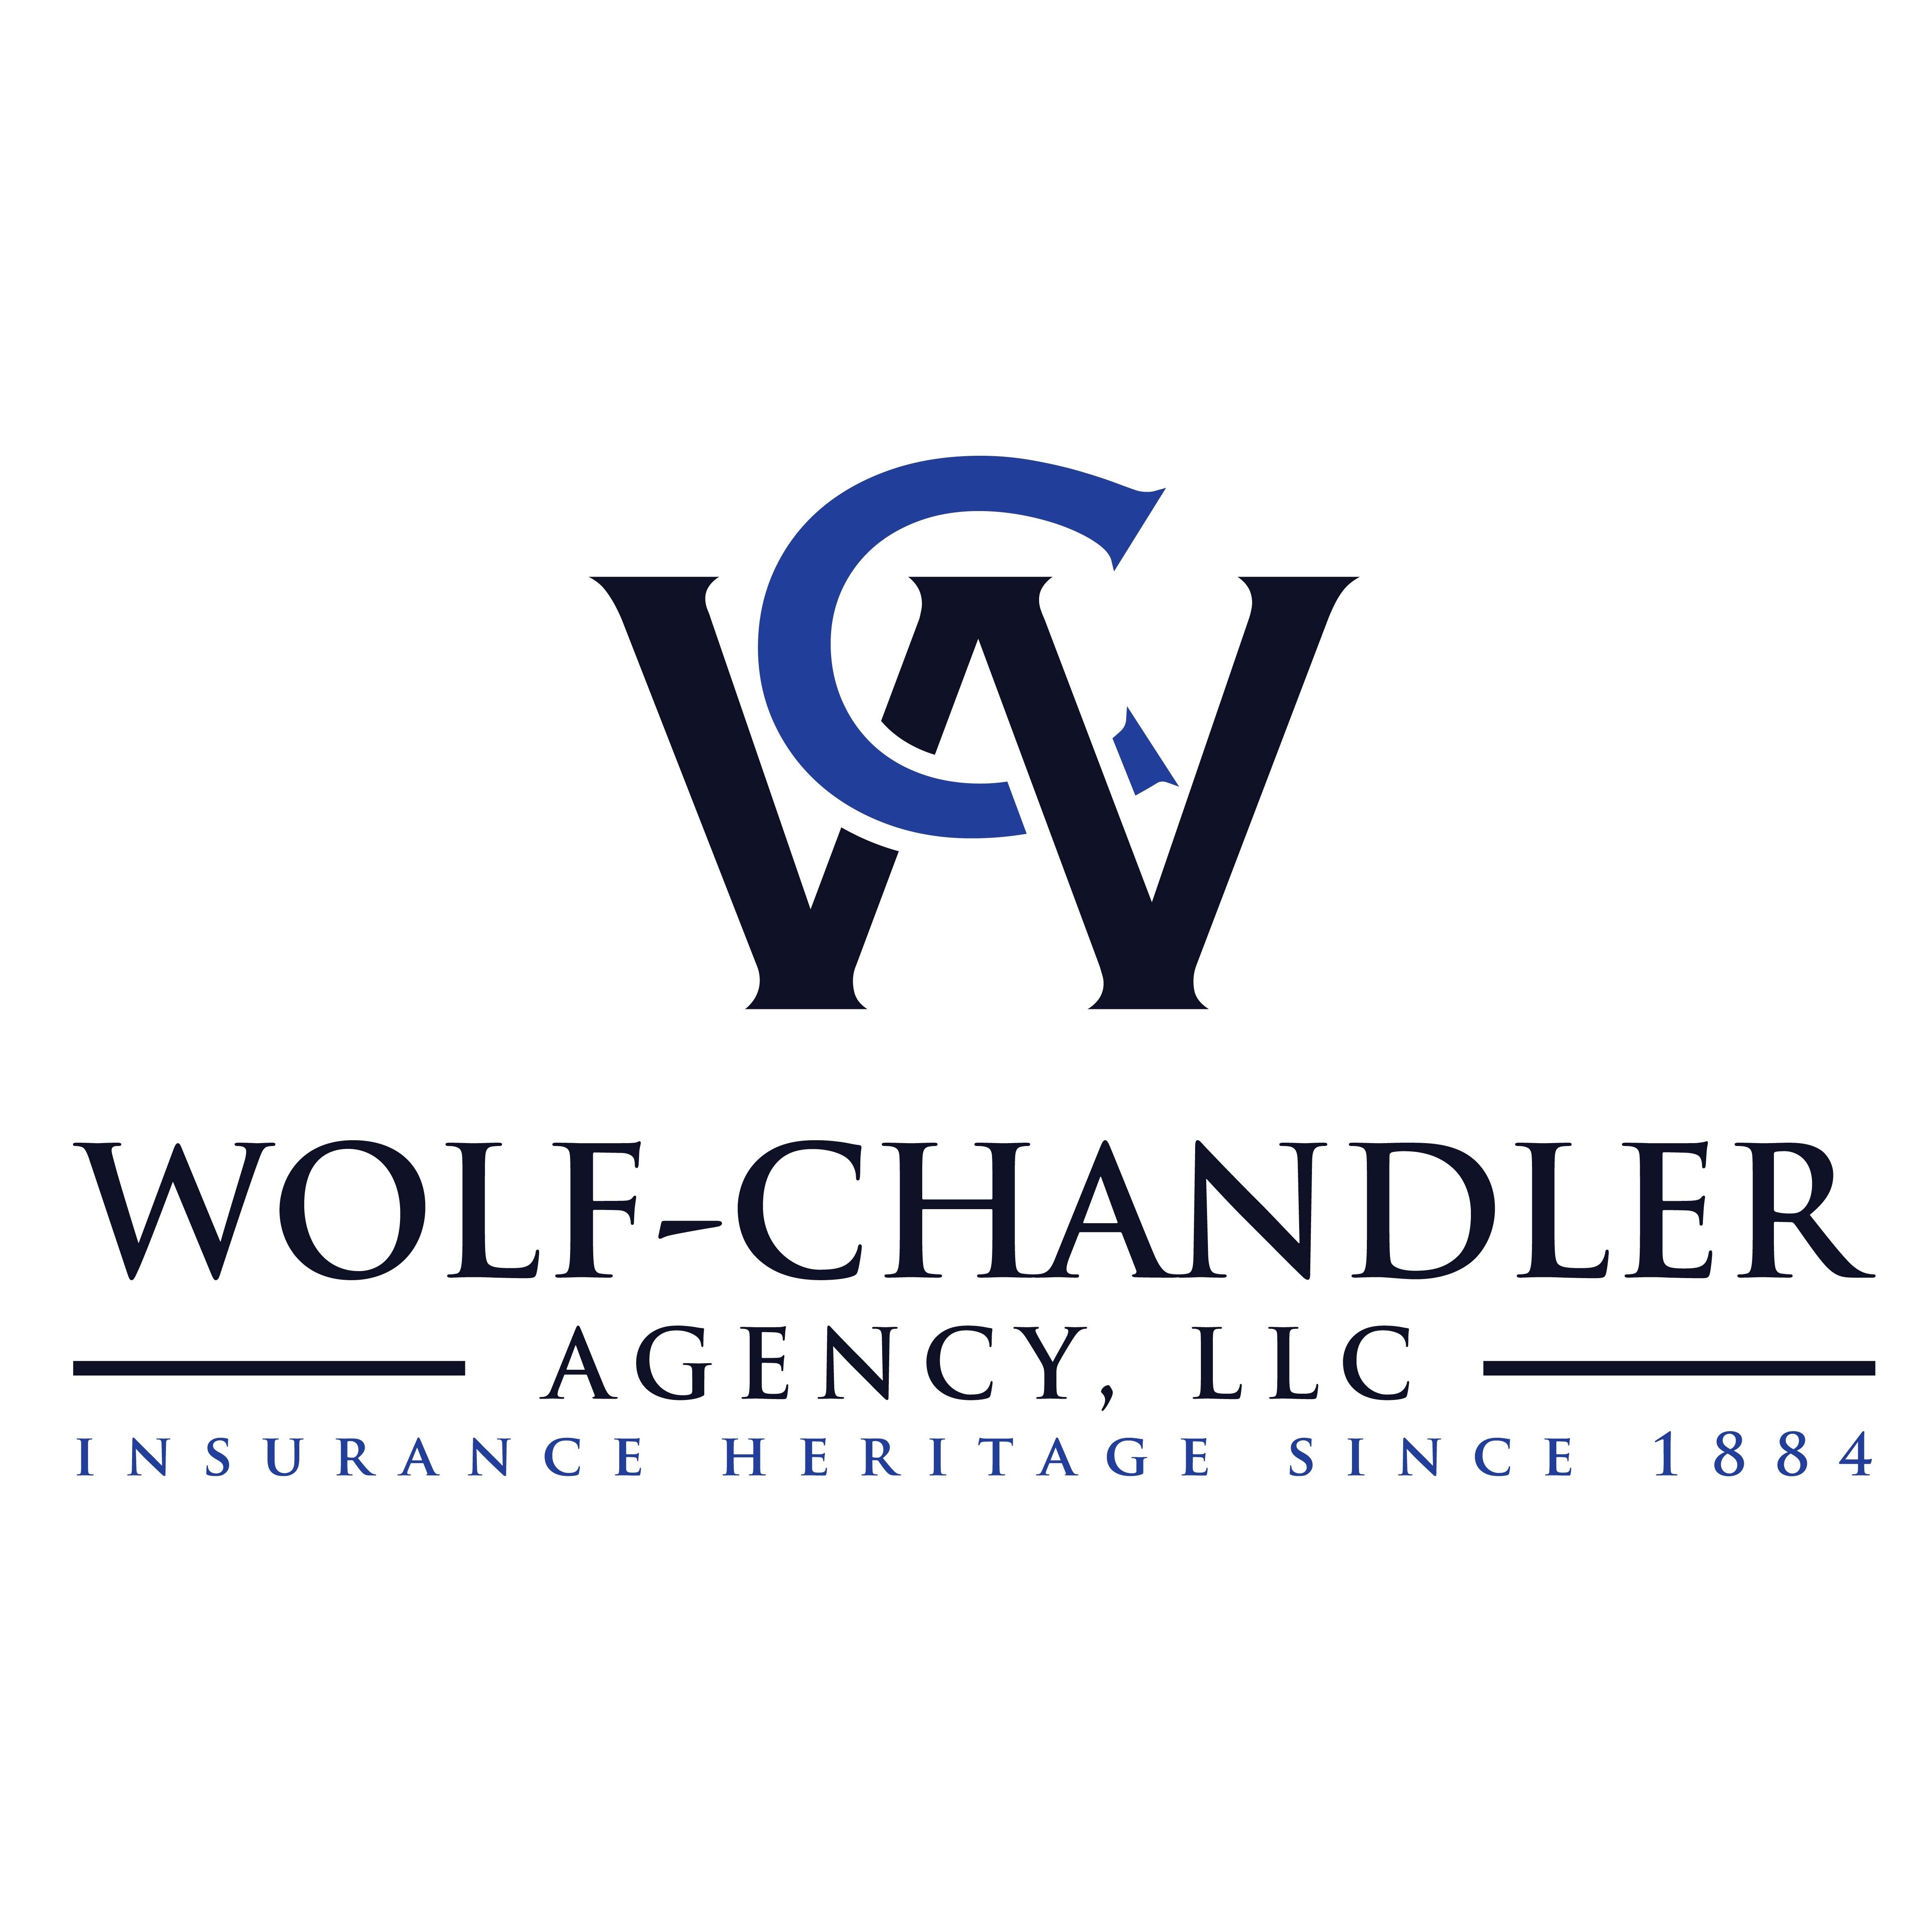 Wolf-Chandler Agency, LLC